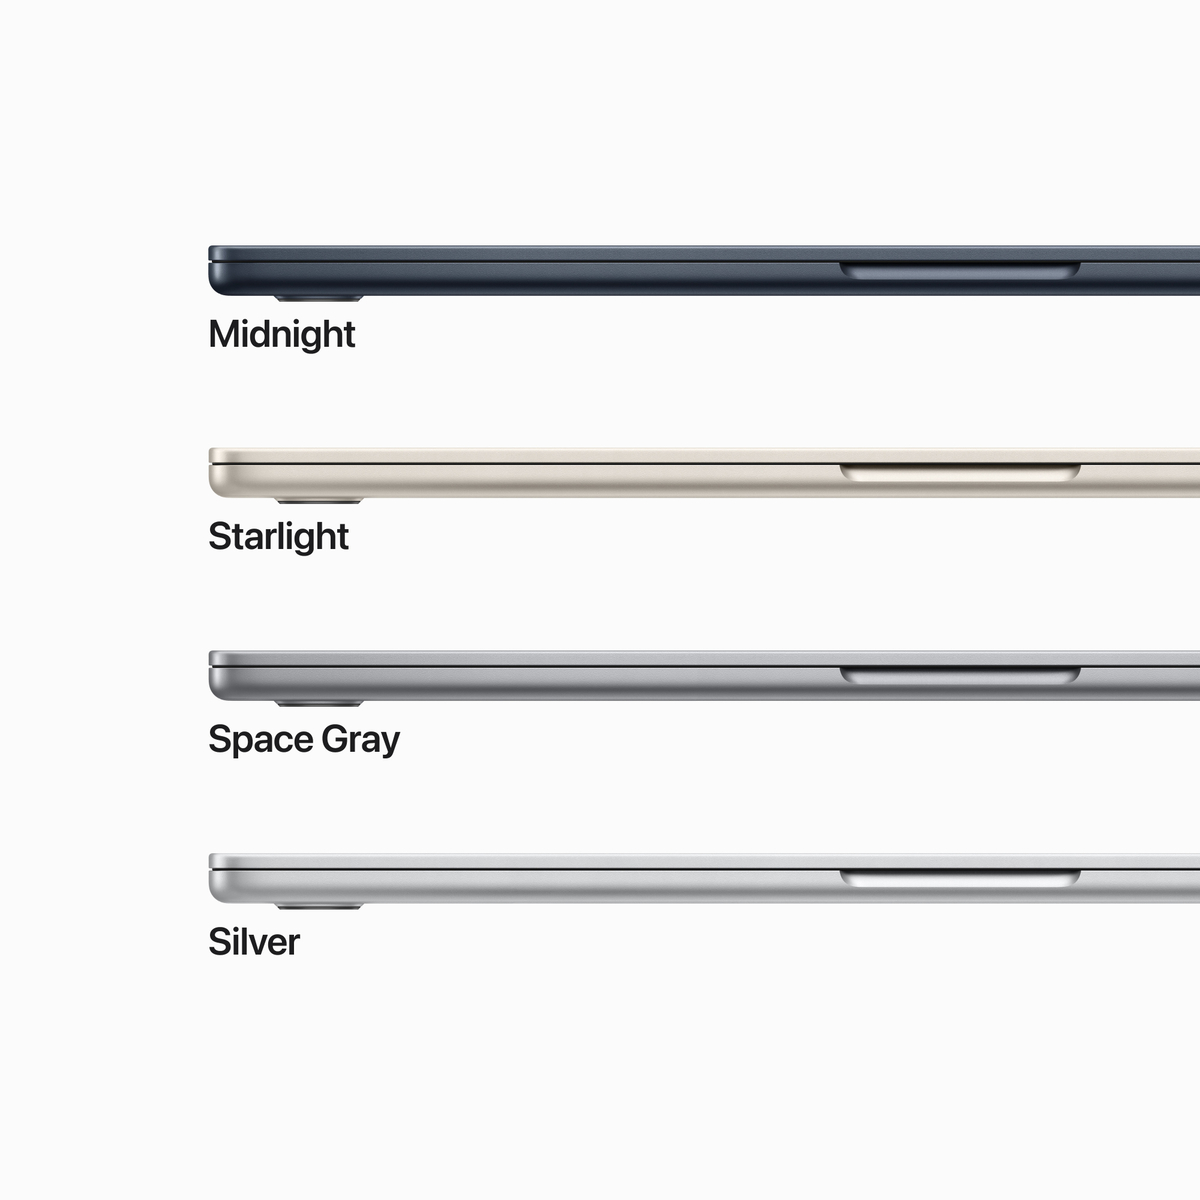 Apple MacBook Air M2 Chip, 15-inches, EN-AR Keyboard, 8 GB RAM, 512 GB Storage, Space Gray, MQKQ3AB/A